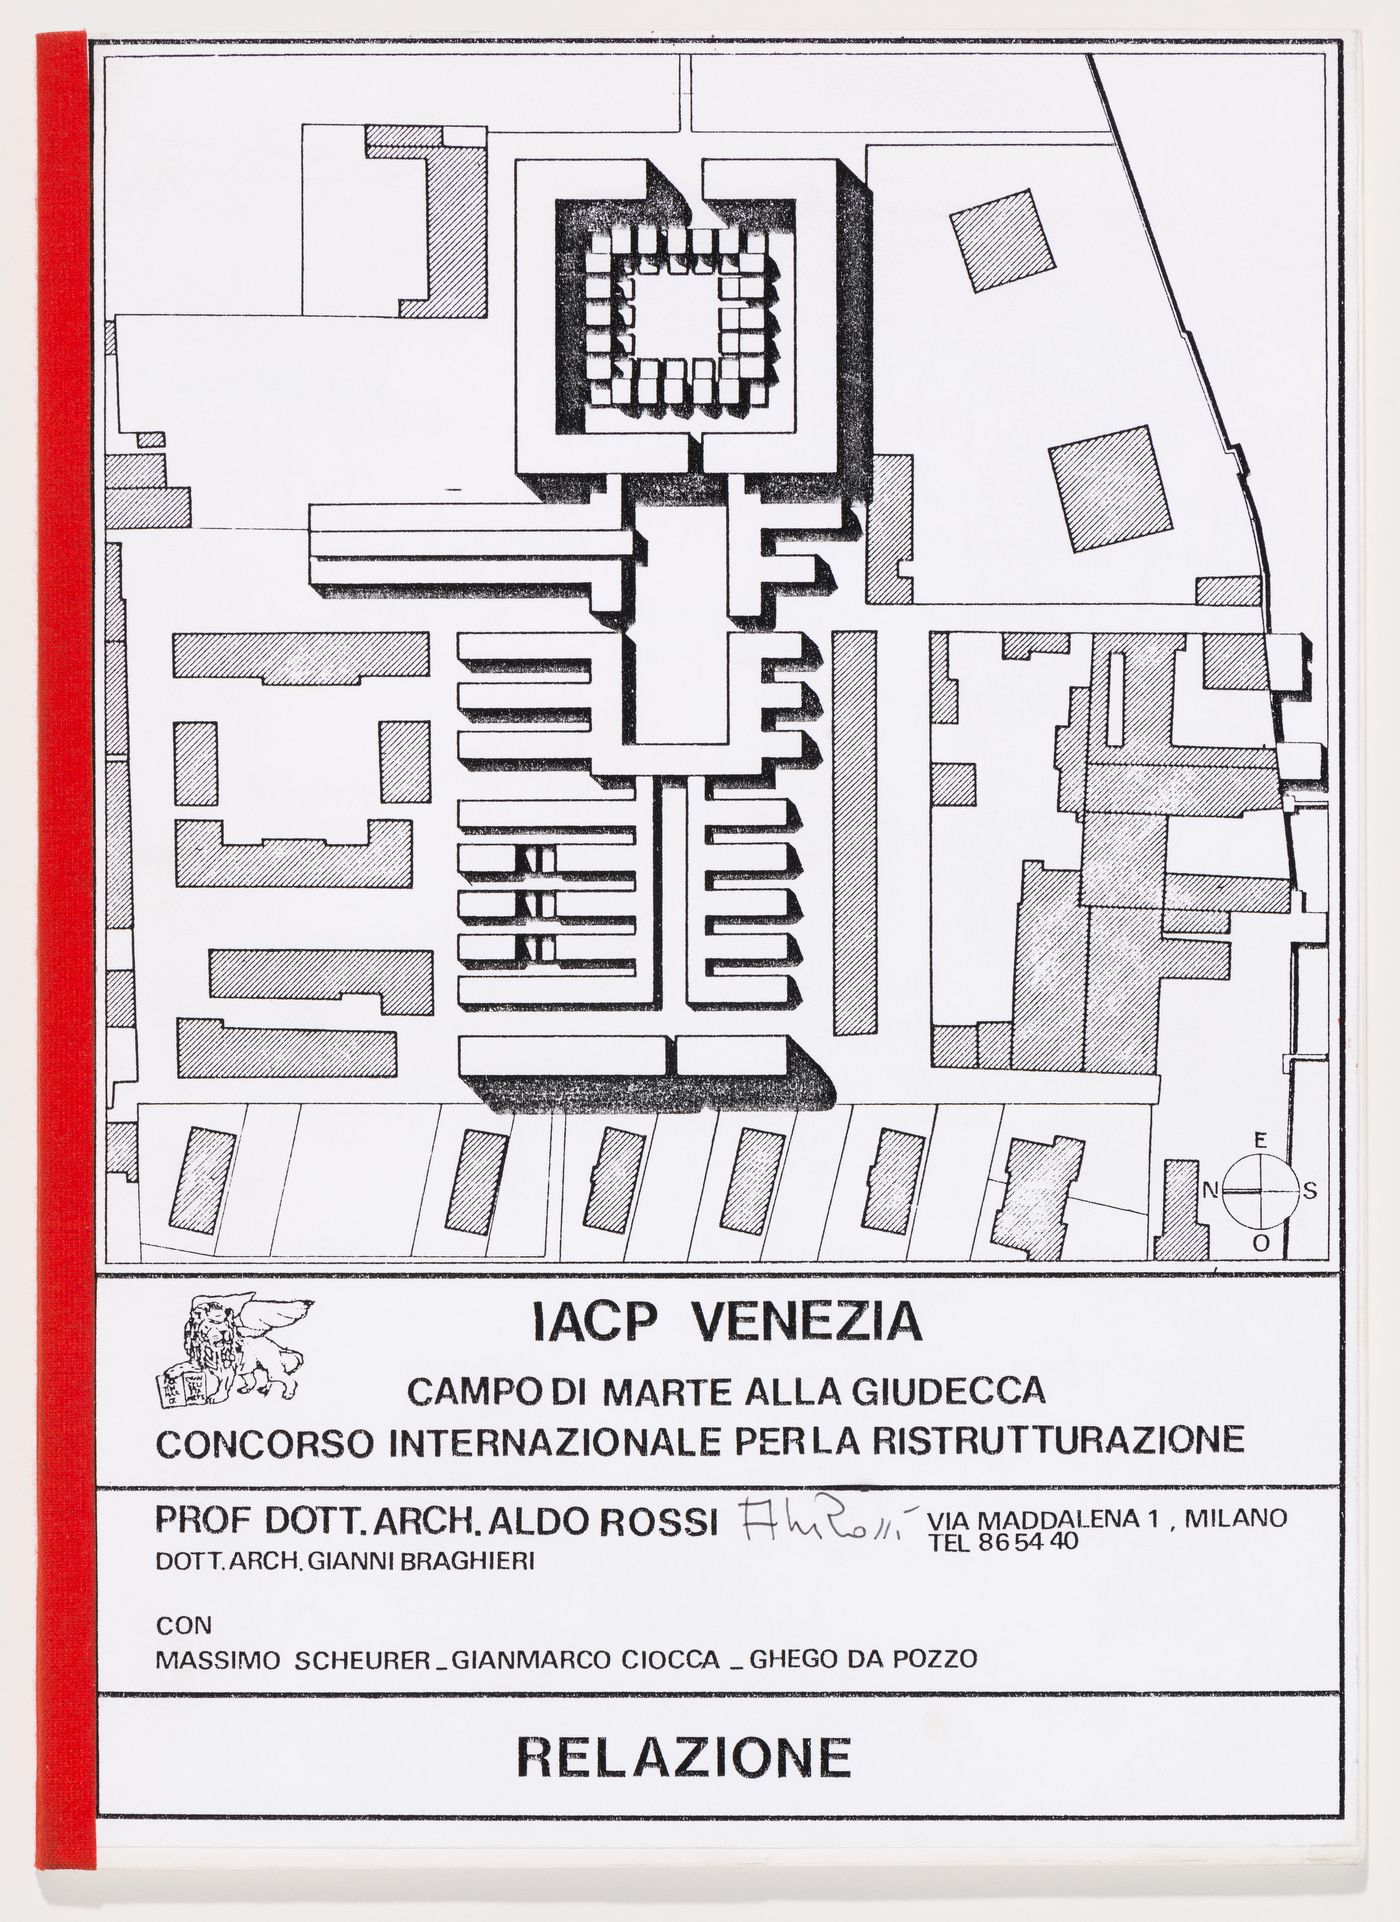 IACP Venezia, Campo di Marte alla Giudecca, Concorso internazionale per la ristrutturazione. Relazione